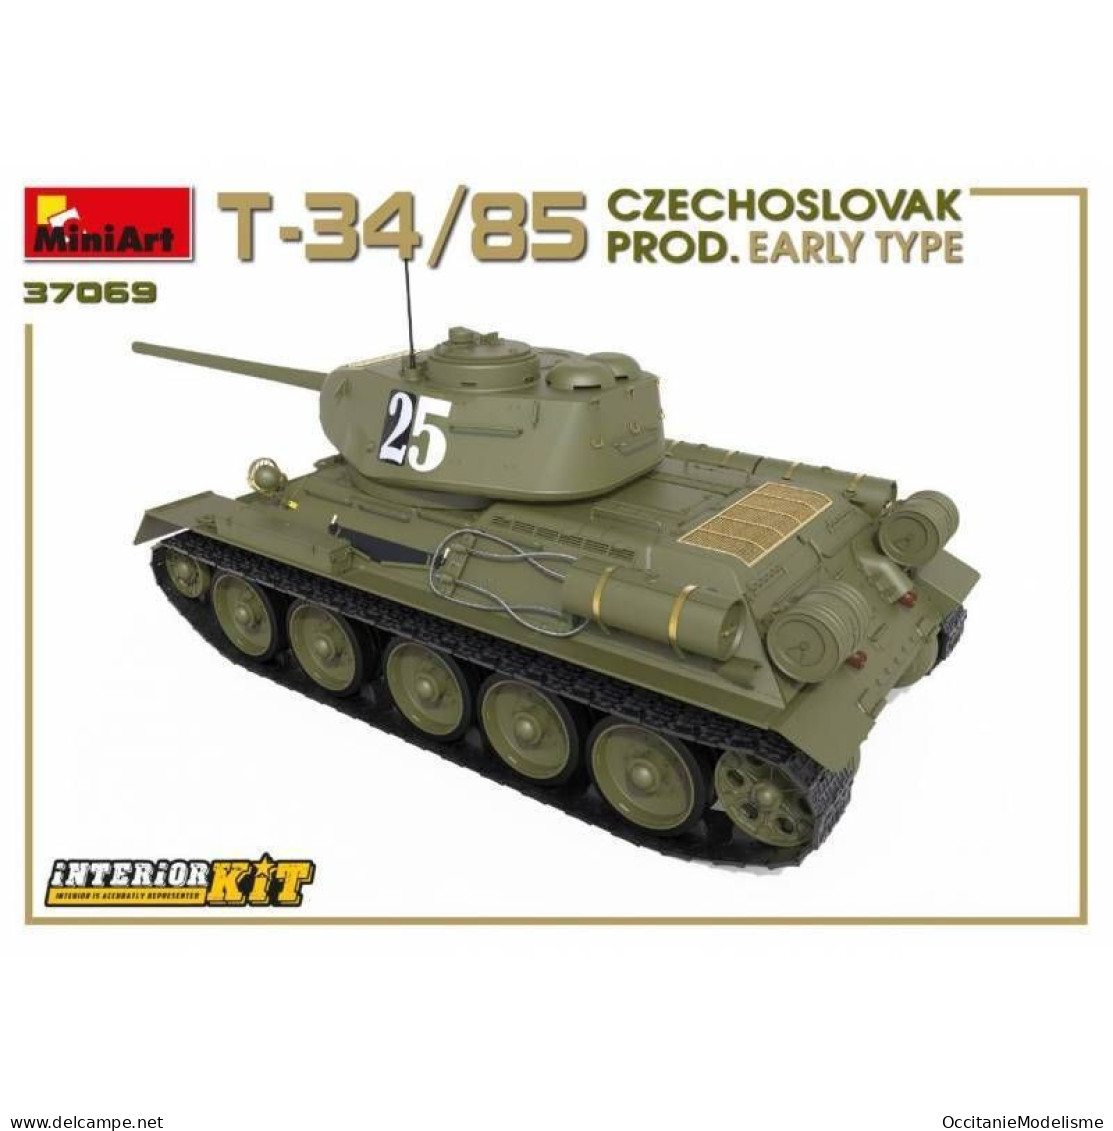 Miniart - CHAR T-34/85 Czechoslovak prod. early type maquette réf. 37069 Neuf NBO 1/35